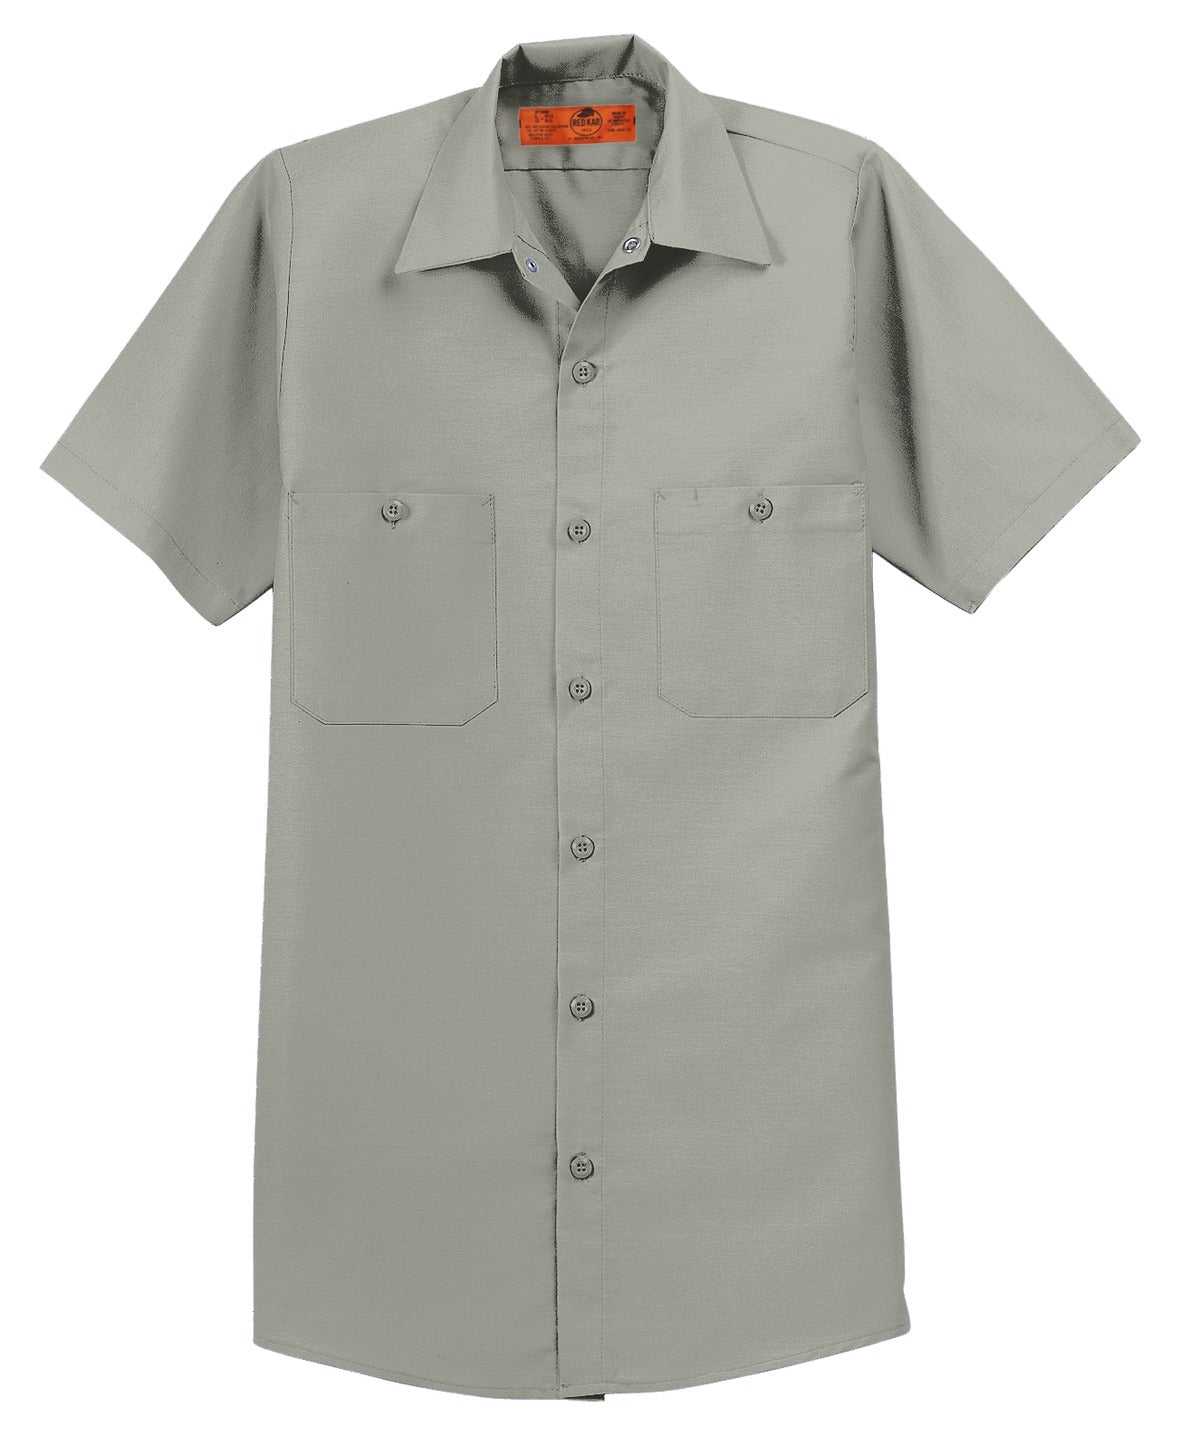 Red Kap SP24 Short Sleeve Industrial Work Shirt - Light Gray - HIT a Double - 3